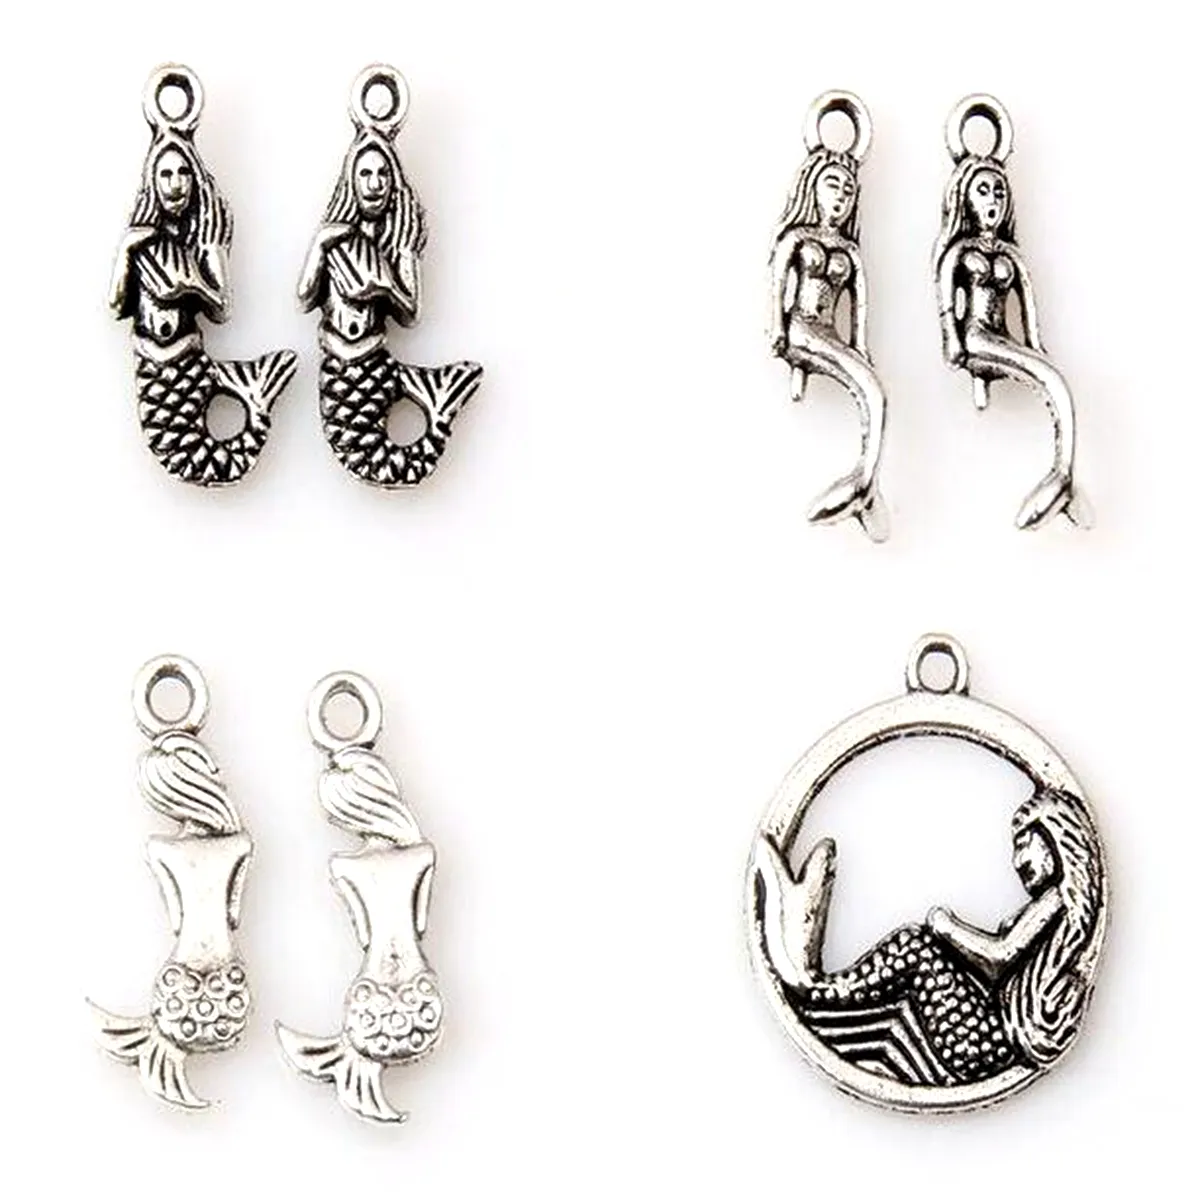 Legering Mermaid Charms Hangers voor Sieraden Maken Armband Ketting DIY Accessoires Antiek Zilver 120pcs